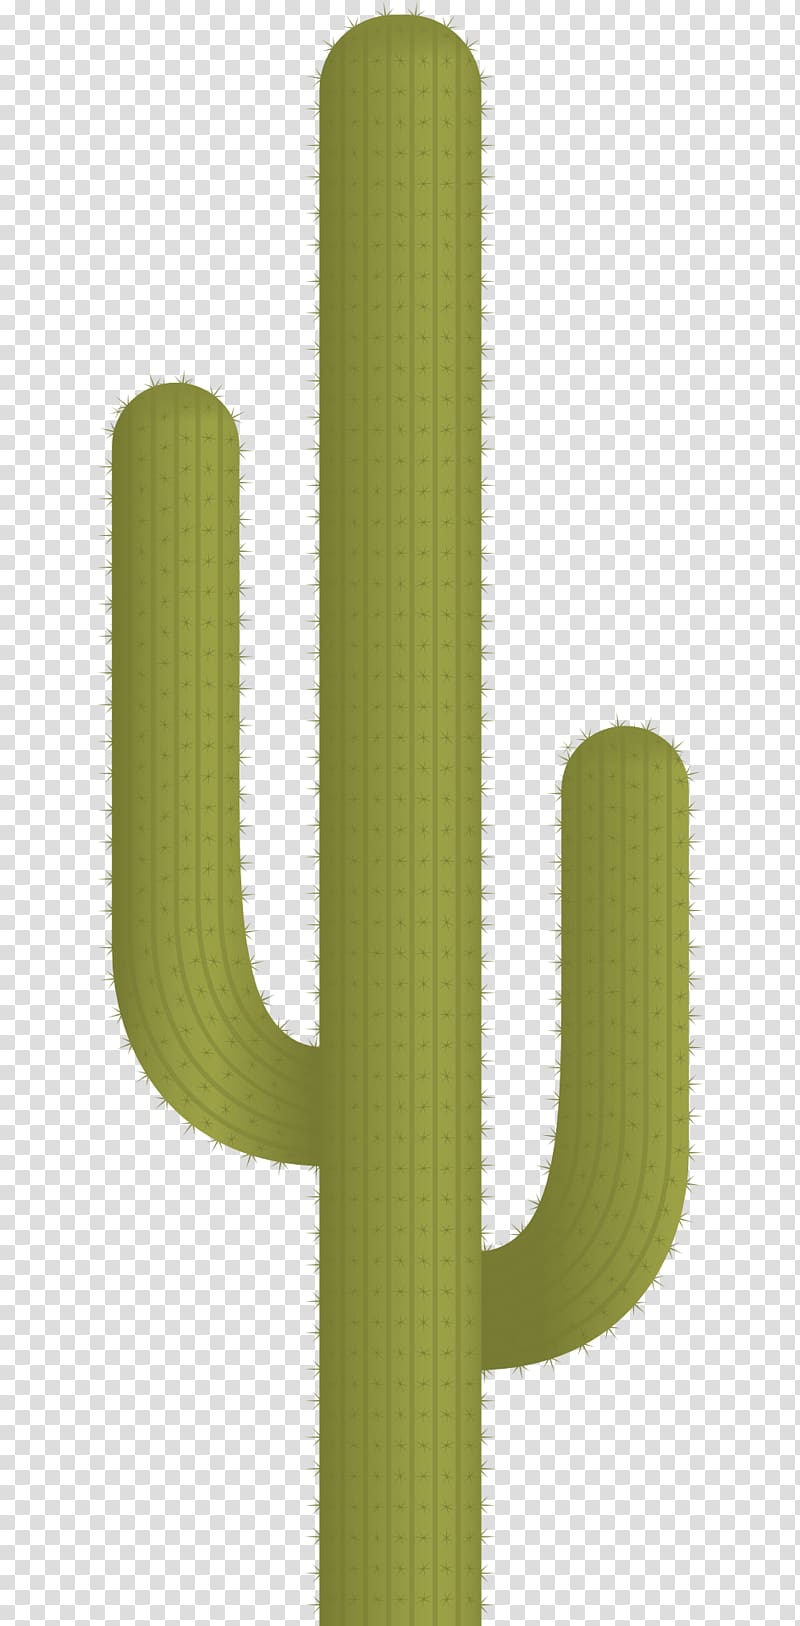 Green Cactaceae Pattern, Cactus Plant transparent background PNG clipart